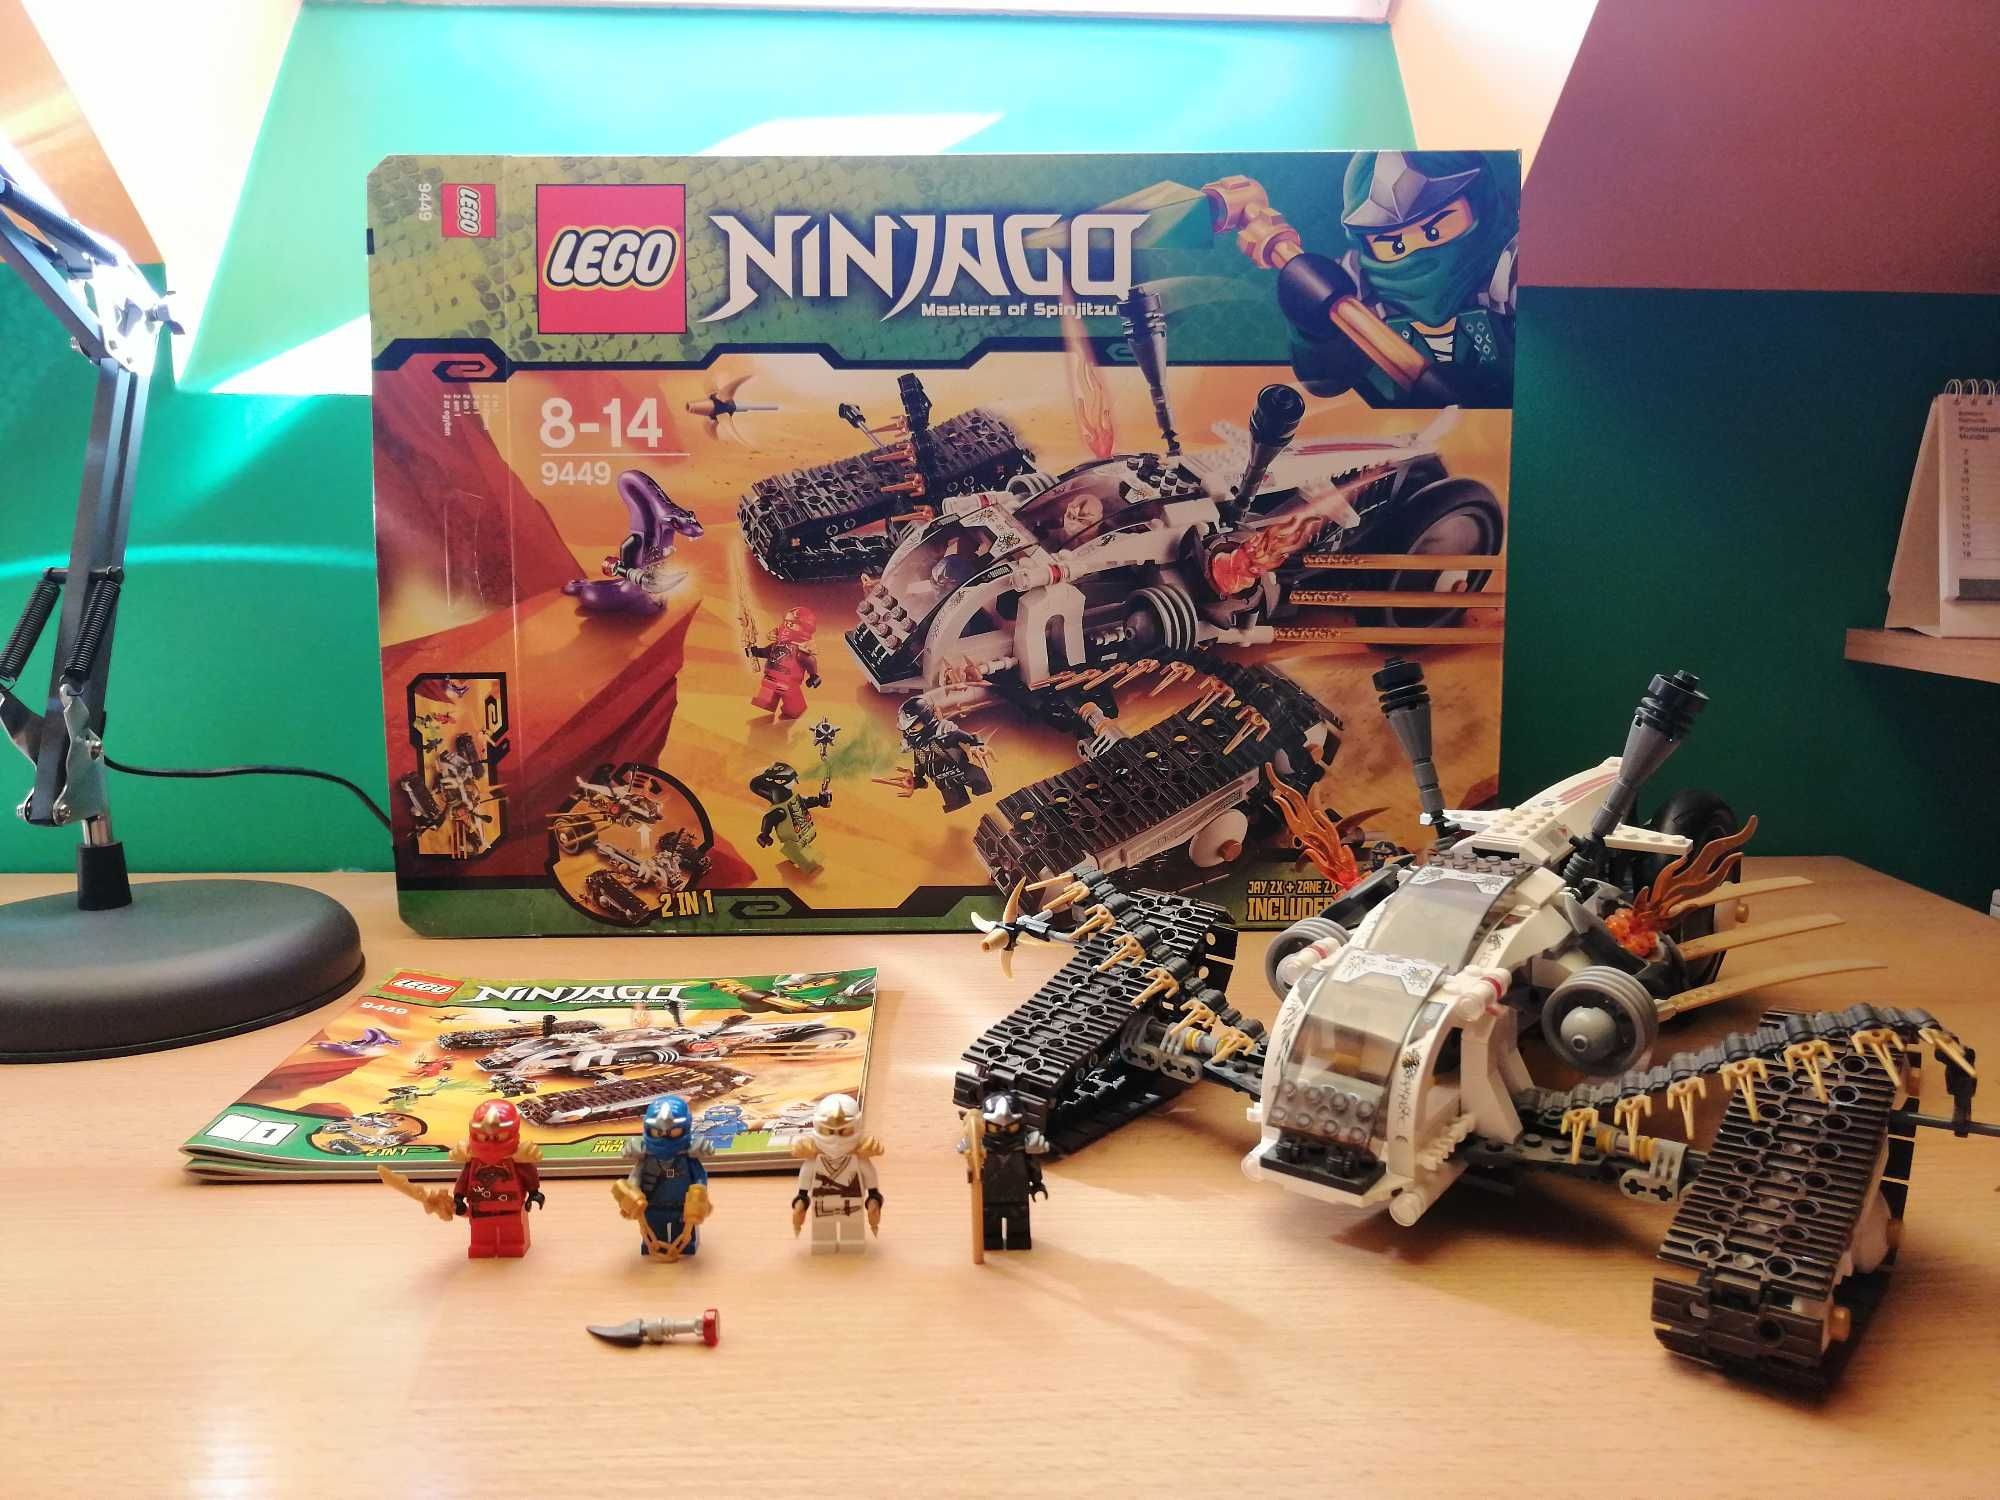 LEGO Ninjago 9449